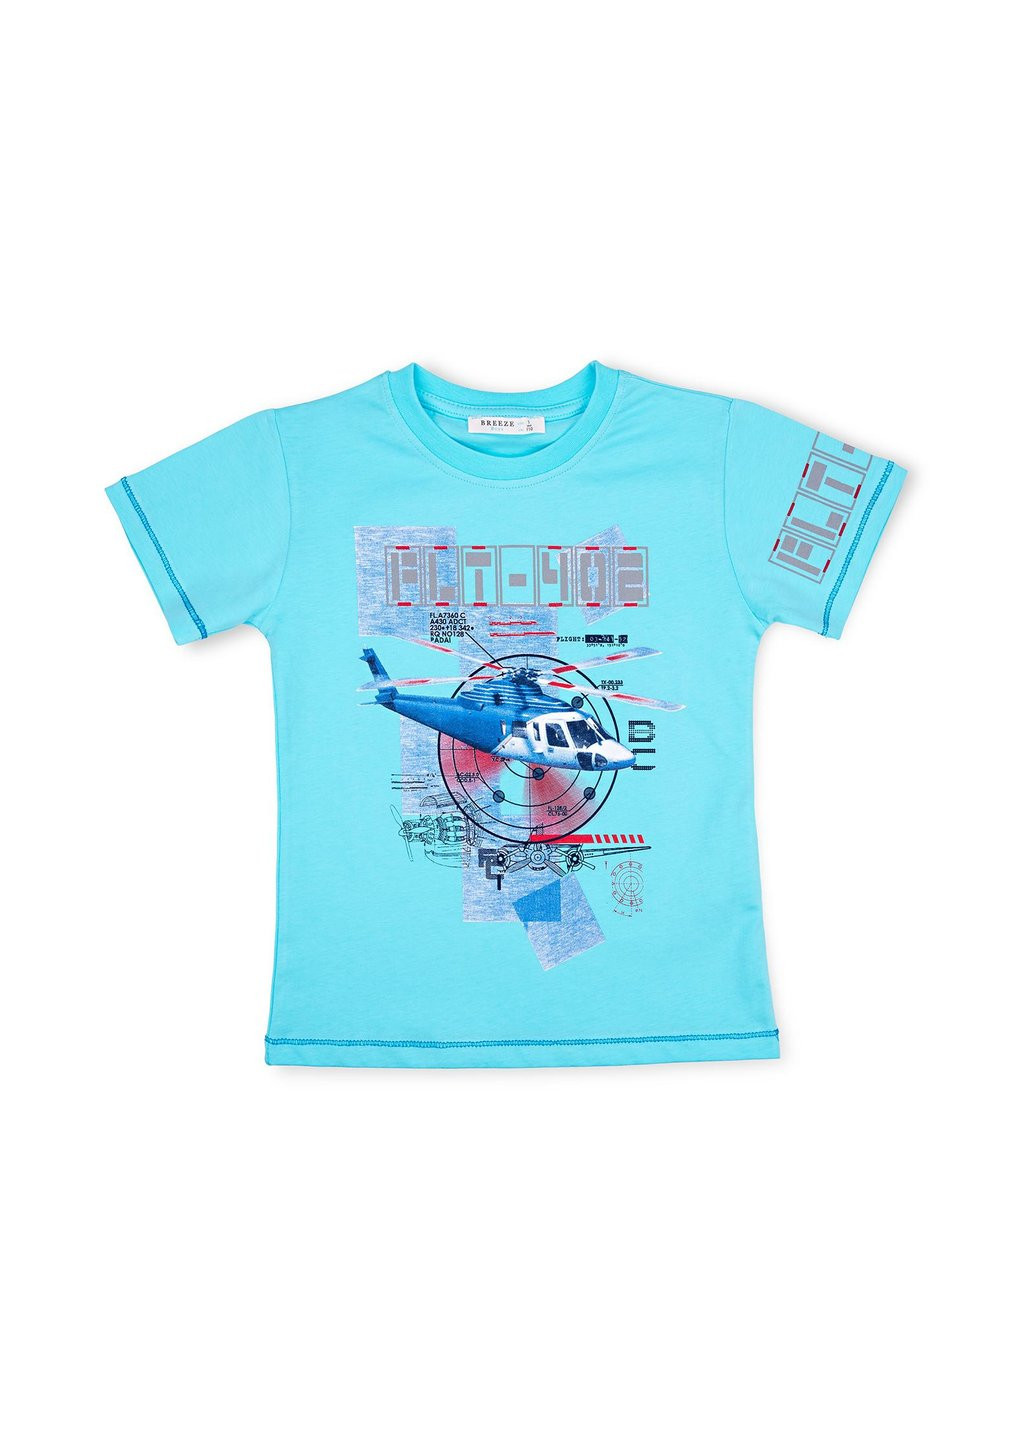 Блакитний літній набір дитячого одягу з вертольотом (10970-110b-blue) Breeze